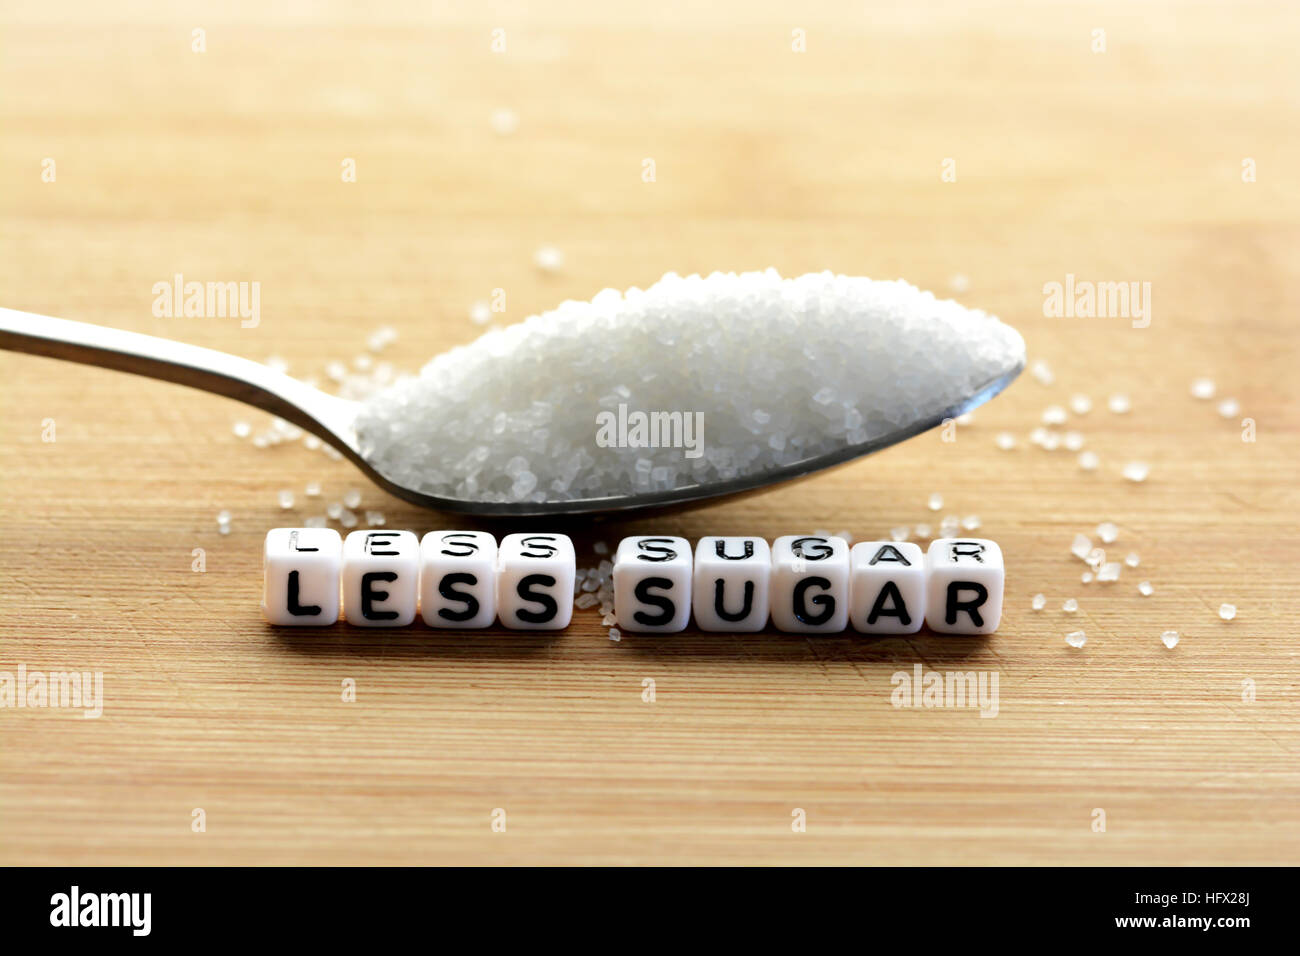 Weniger Zucker Text von gefliesten Buchstaben-Blöcke und Zucker Haufen auf einem Löffel, was darauf hindeutet, Diät Konzept Stockfoto